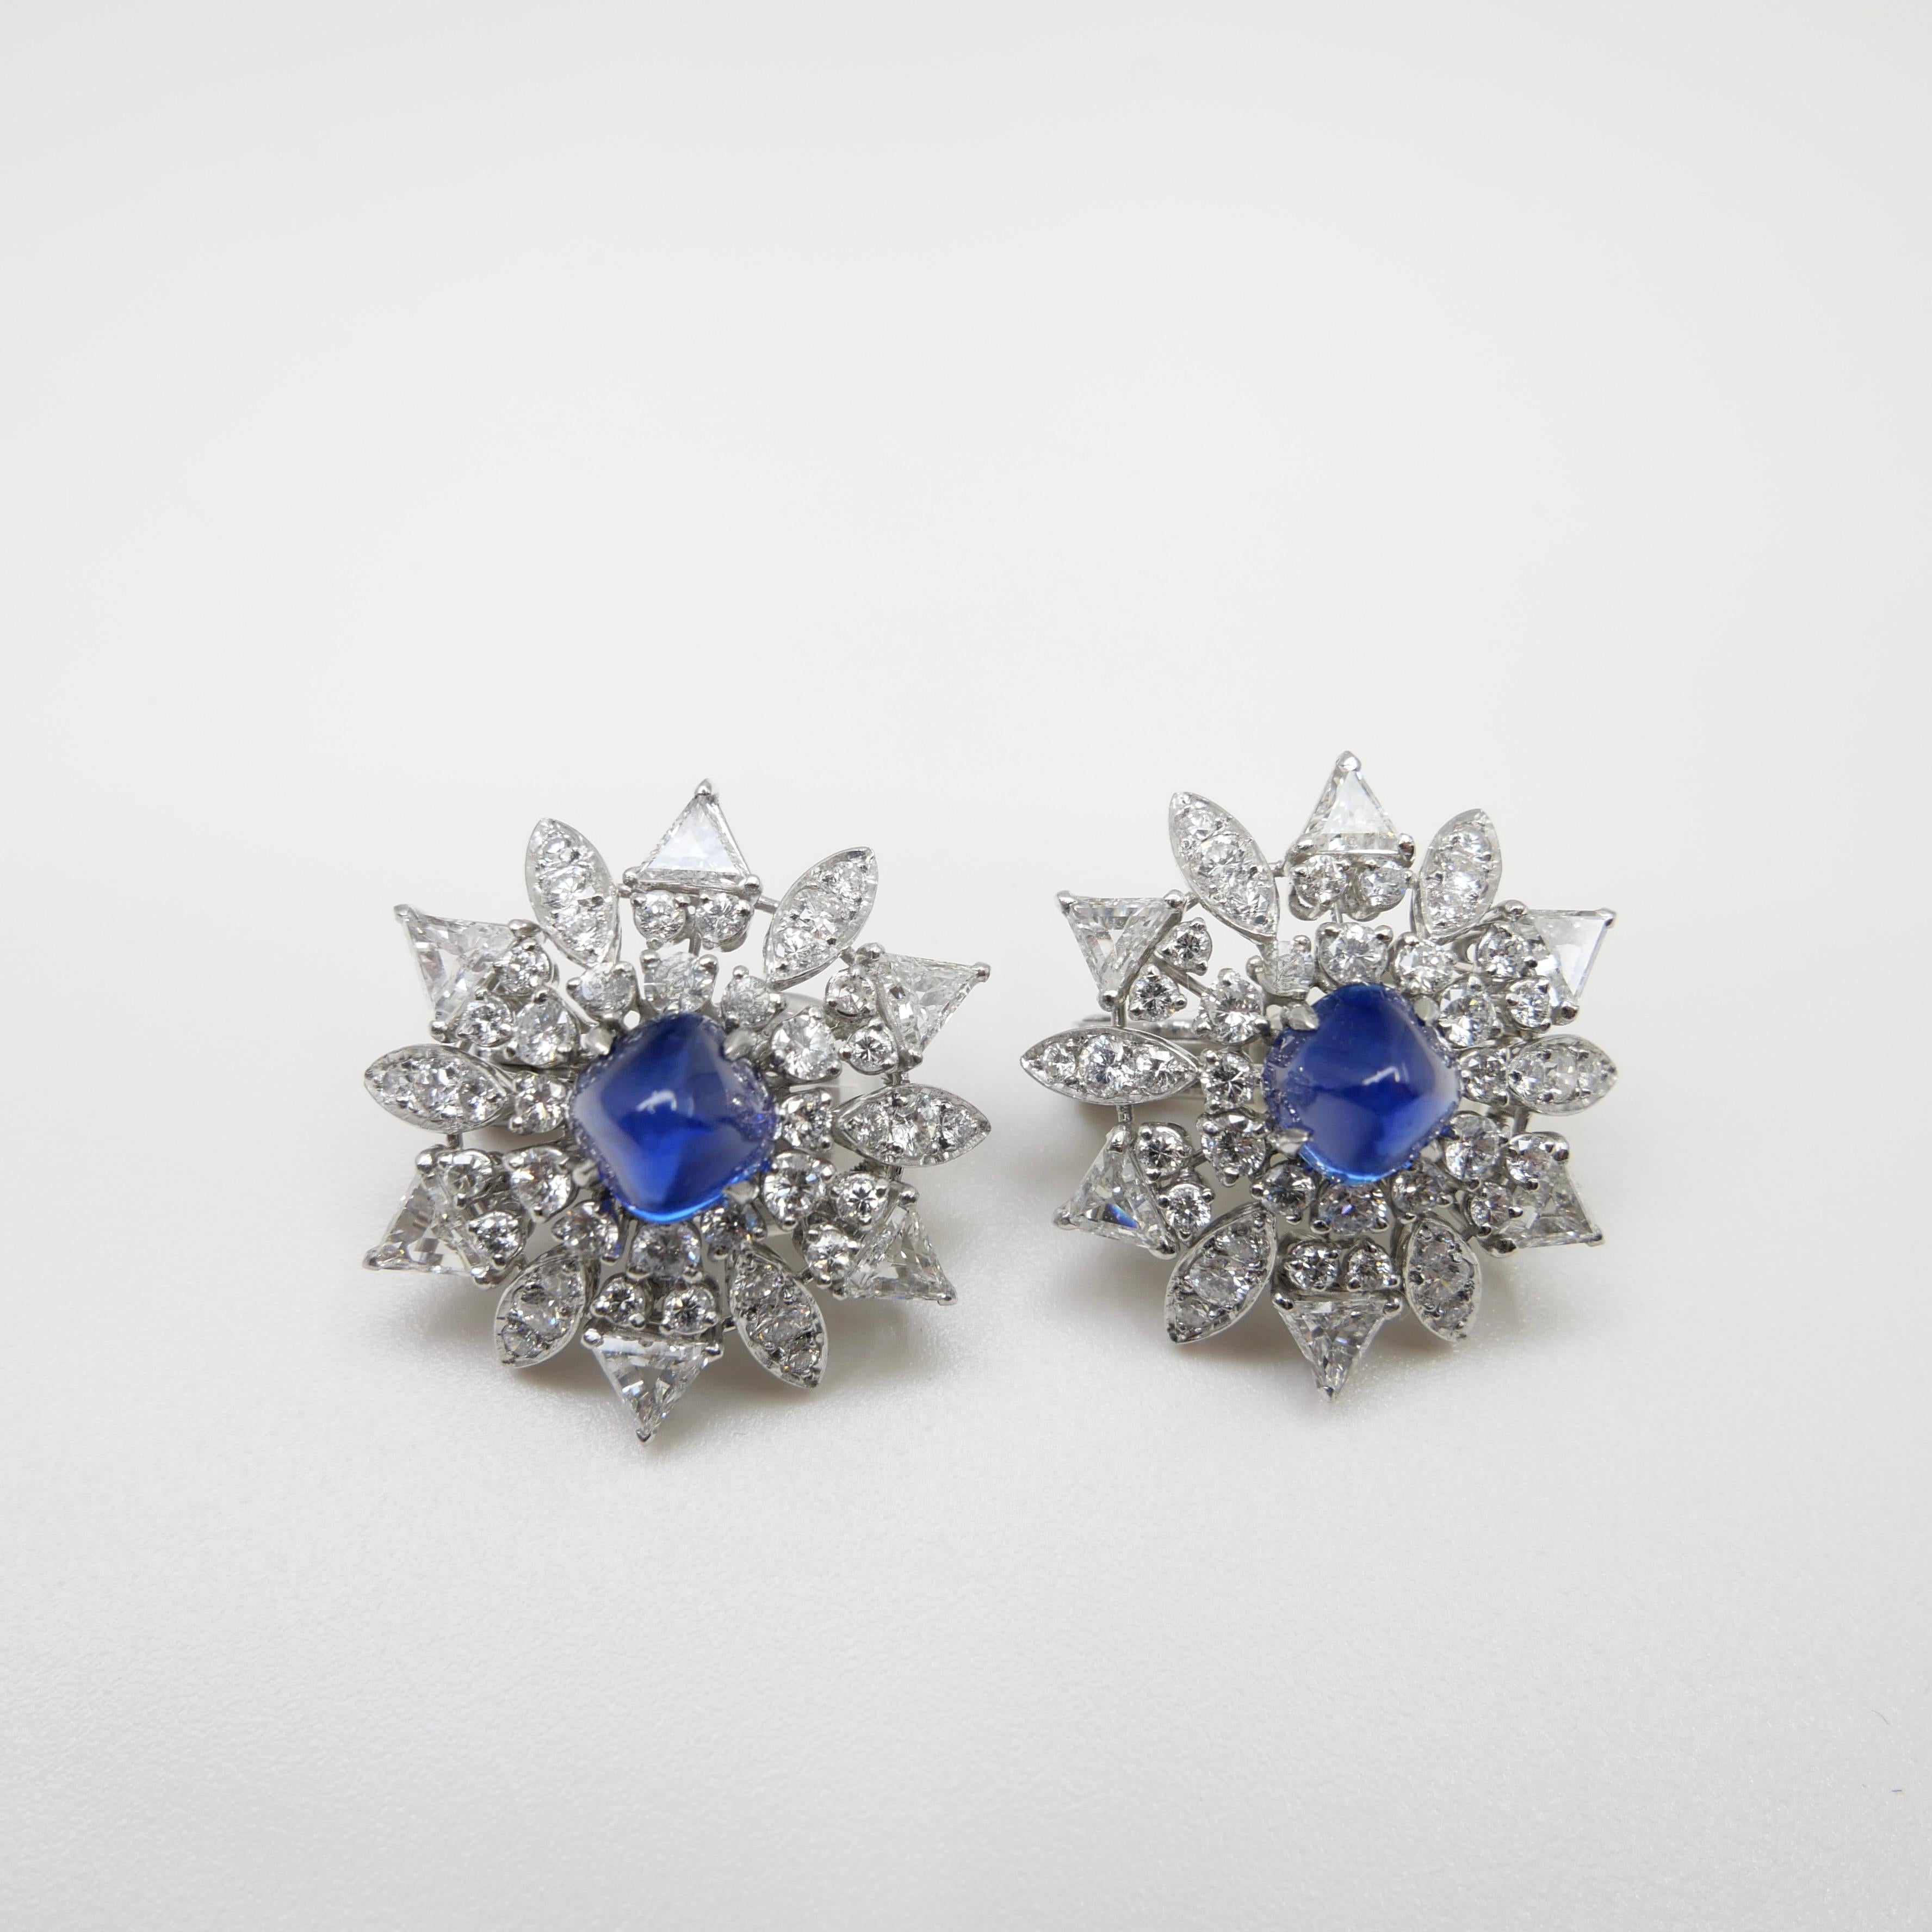 Certified Kashmir Sapphire No Heat Diamond Cluster Earrings, Cornflower Blue 10